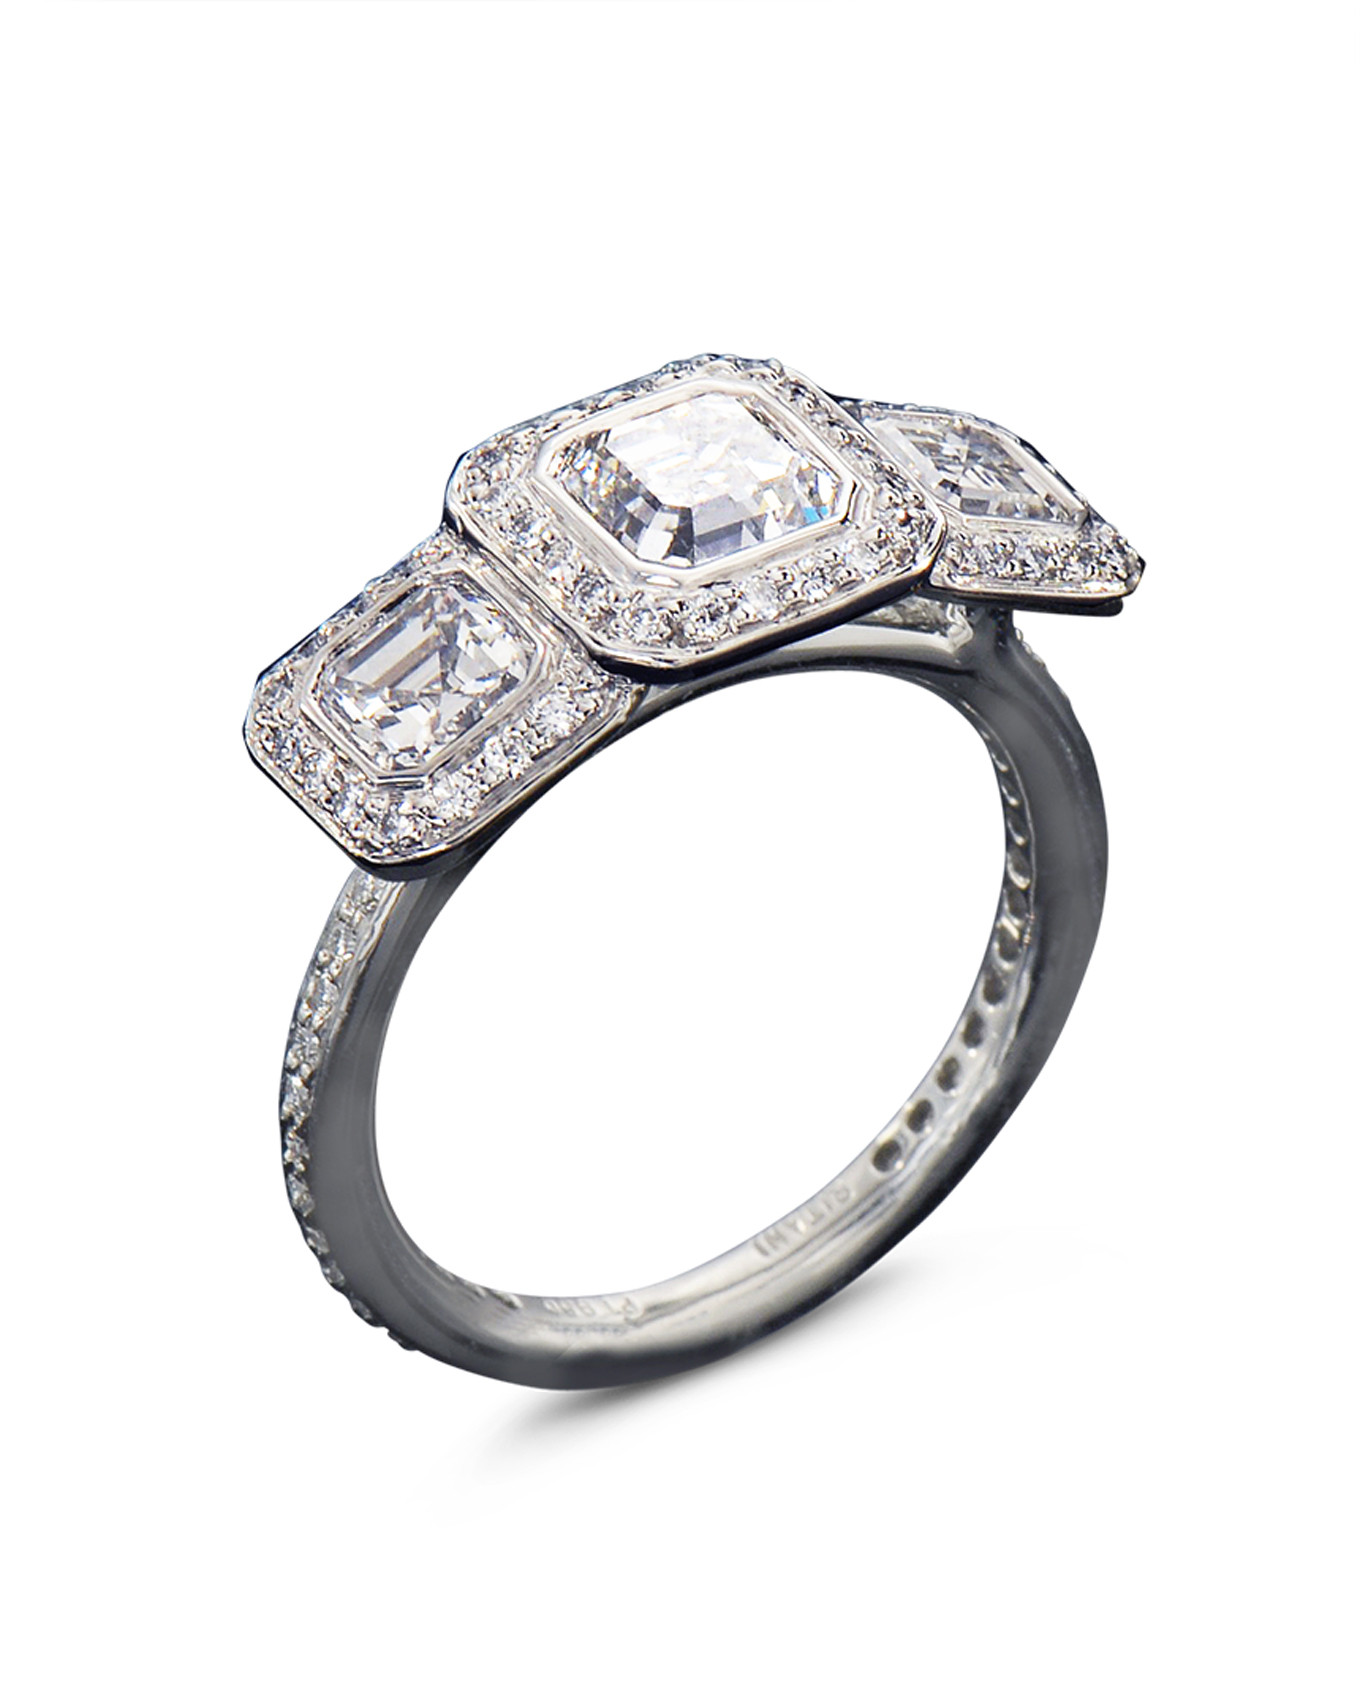 Asscher Cut Diamond Engagement Rings
 Three Stone Asscher Cut Diamond Engagement Ring Turgeon